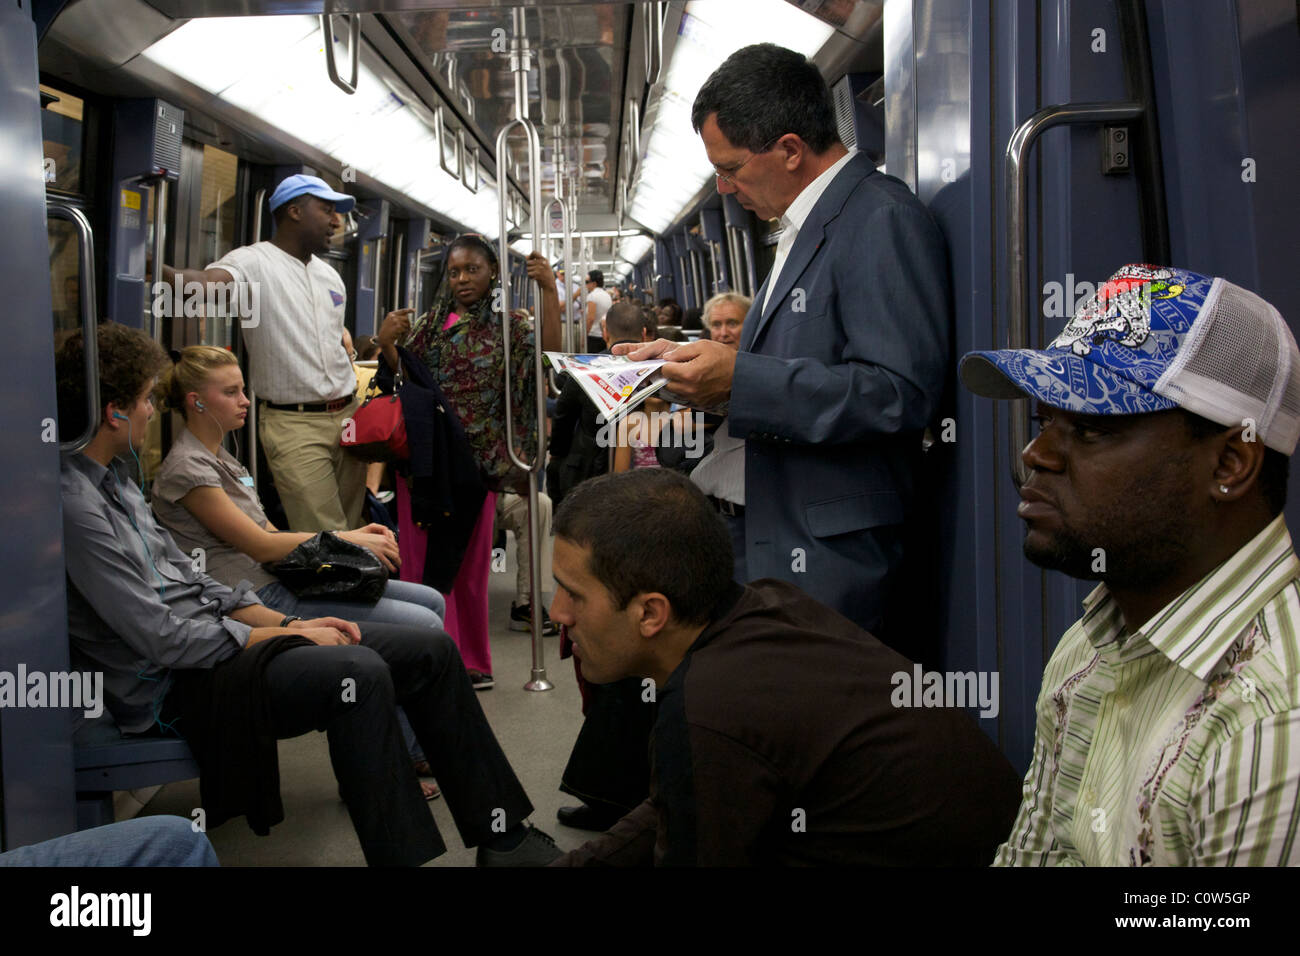 Les voyageurs d'un train sur le métro de Paris Banque D'Images